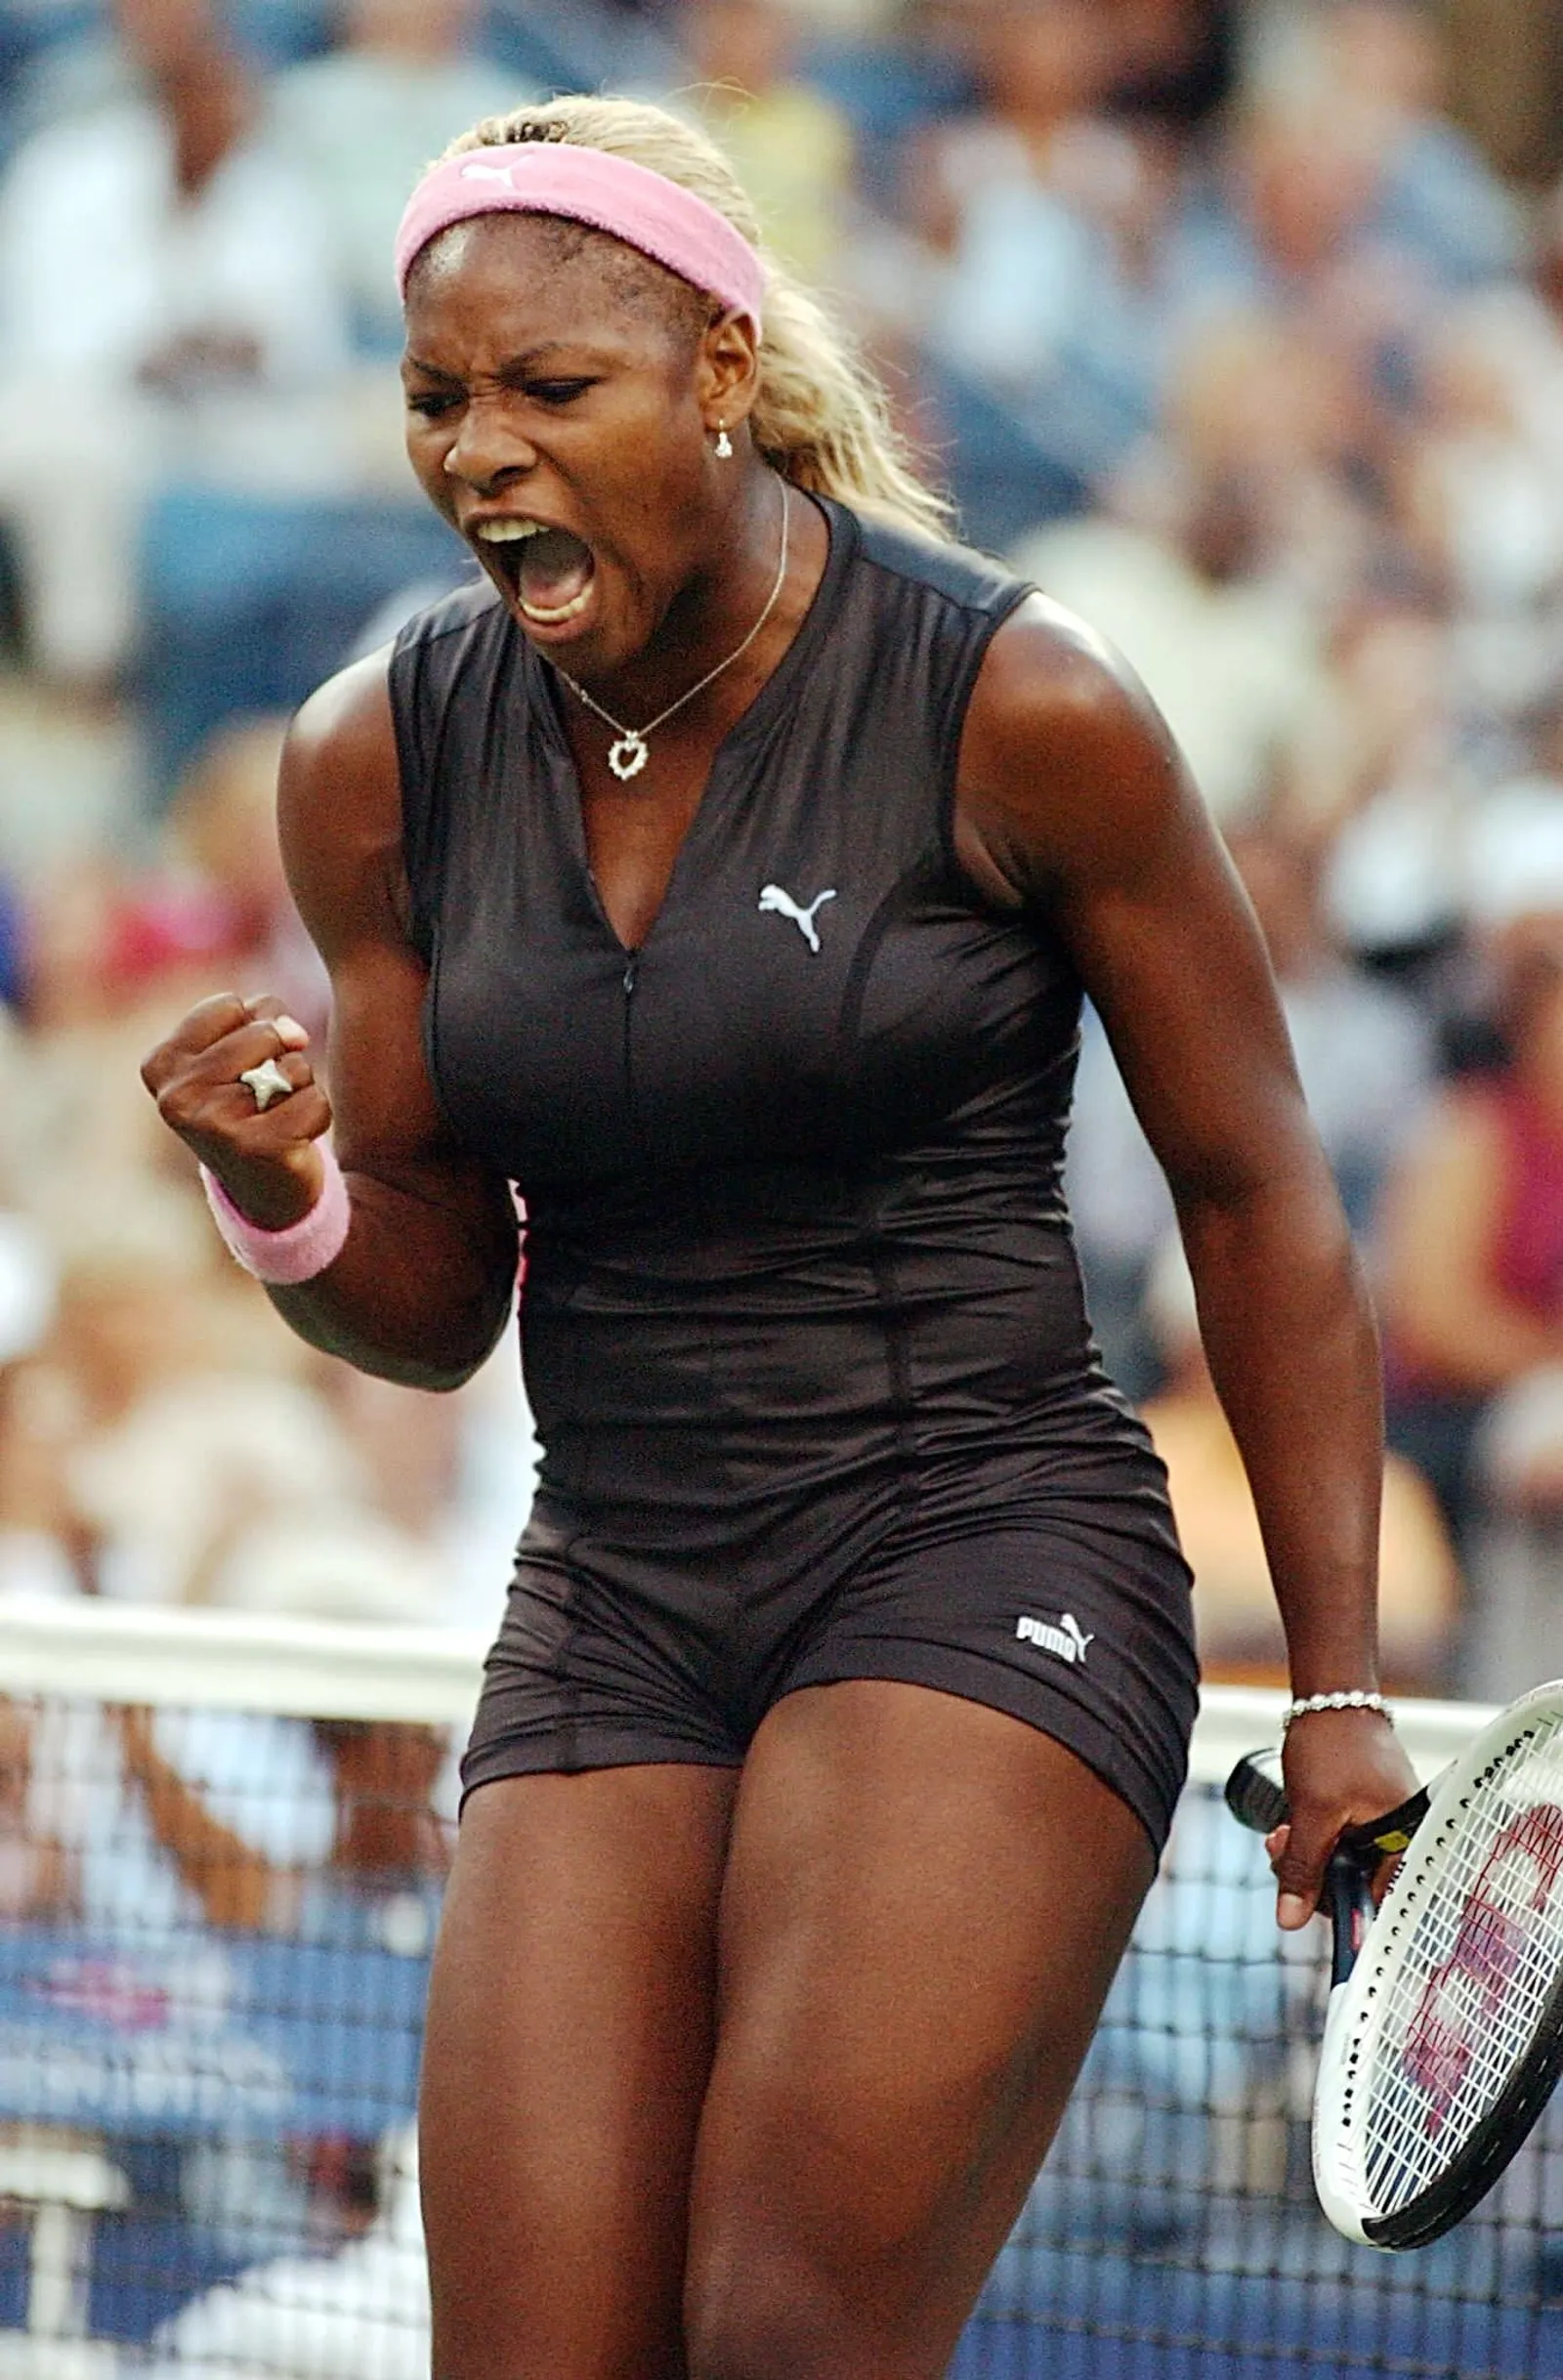 Gaya Ikonik Serena Williams di Lapangan Sebelum Pensiun